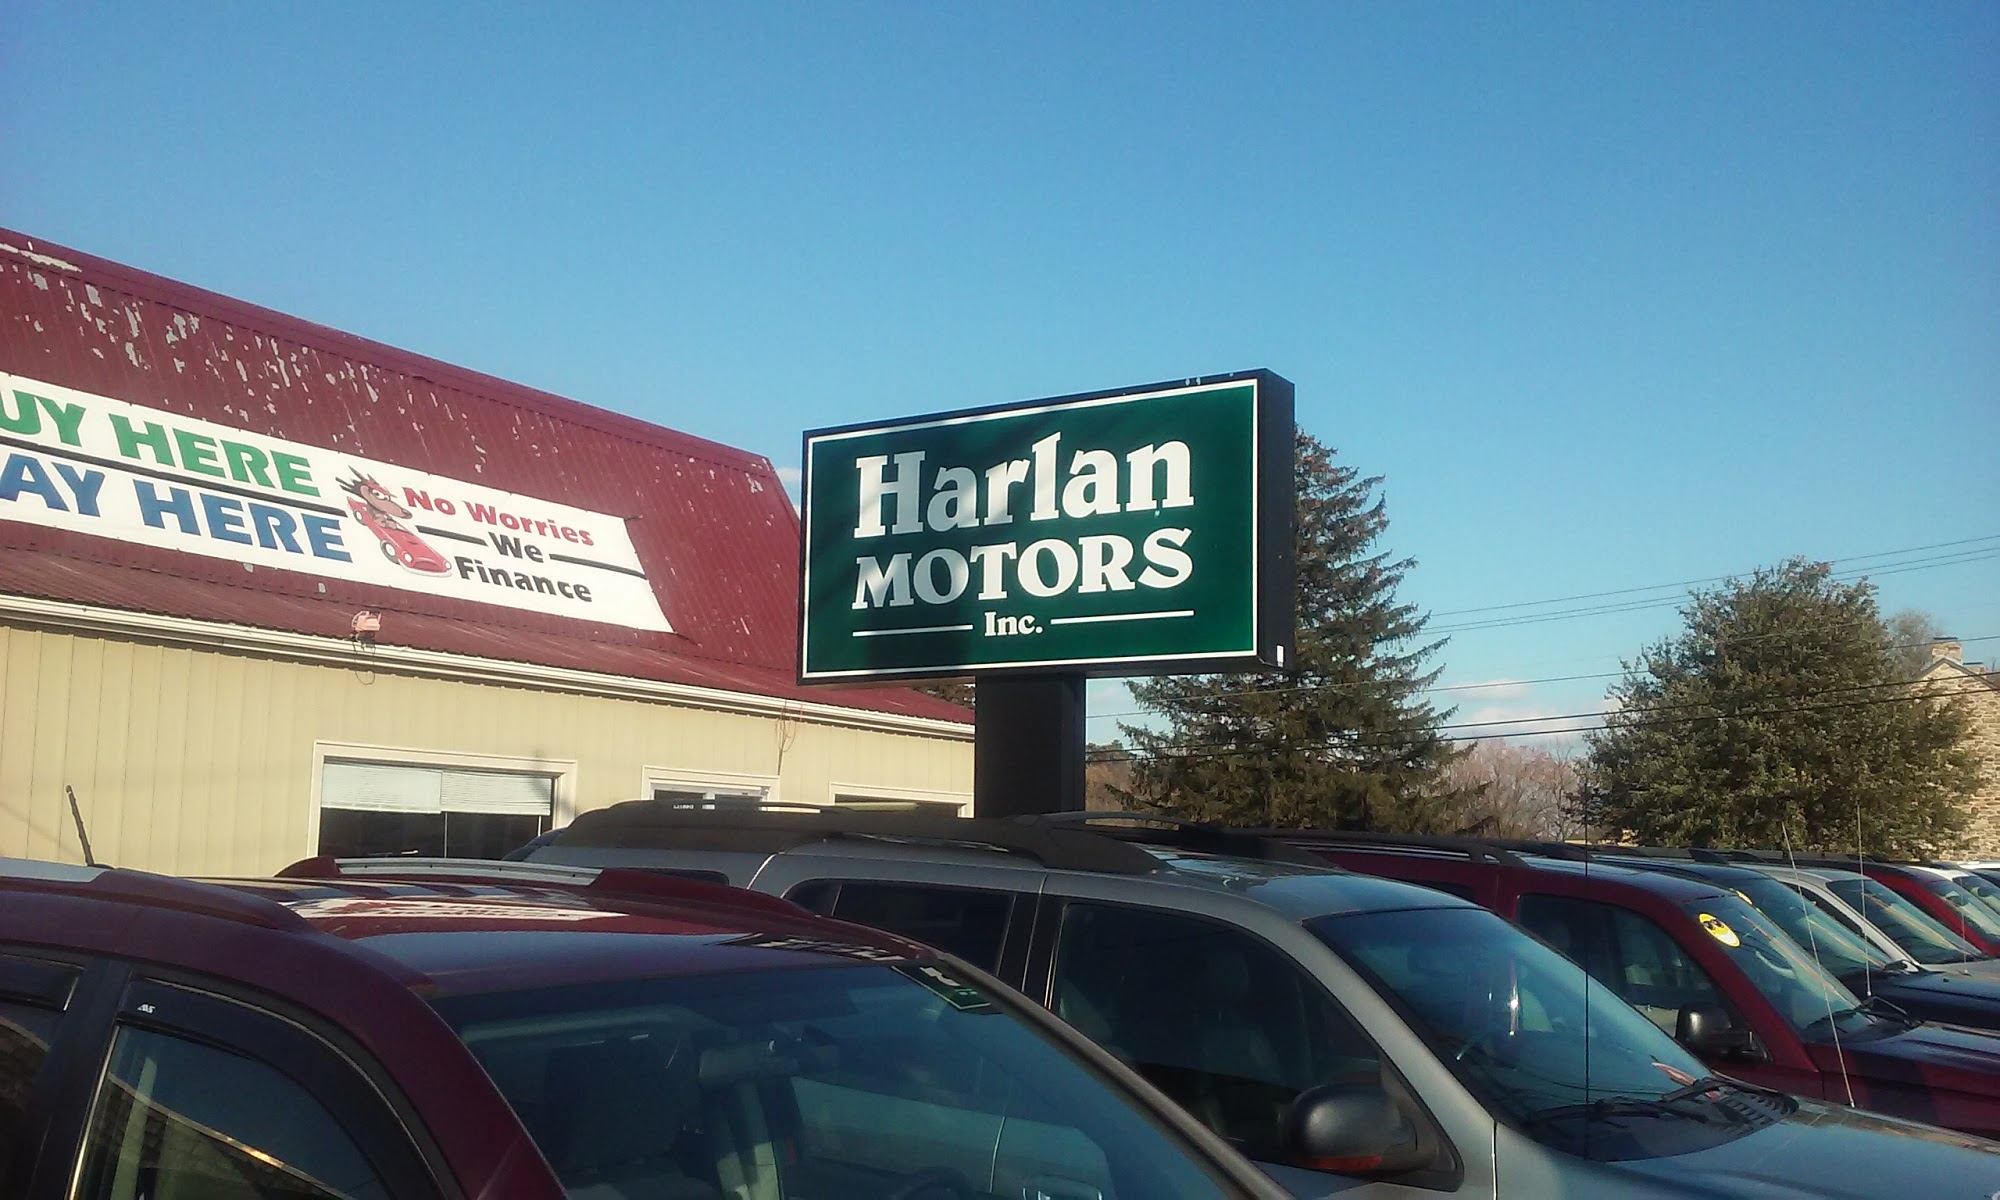 Harlan Motors